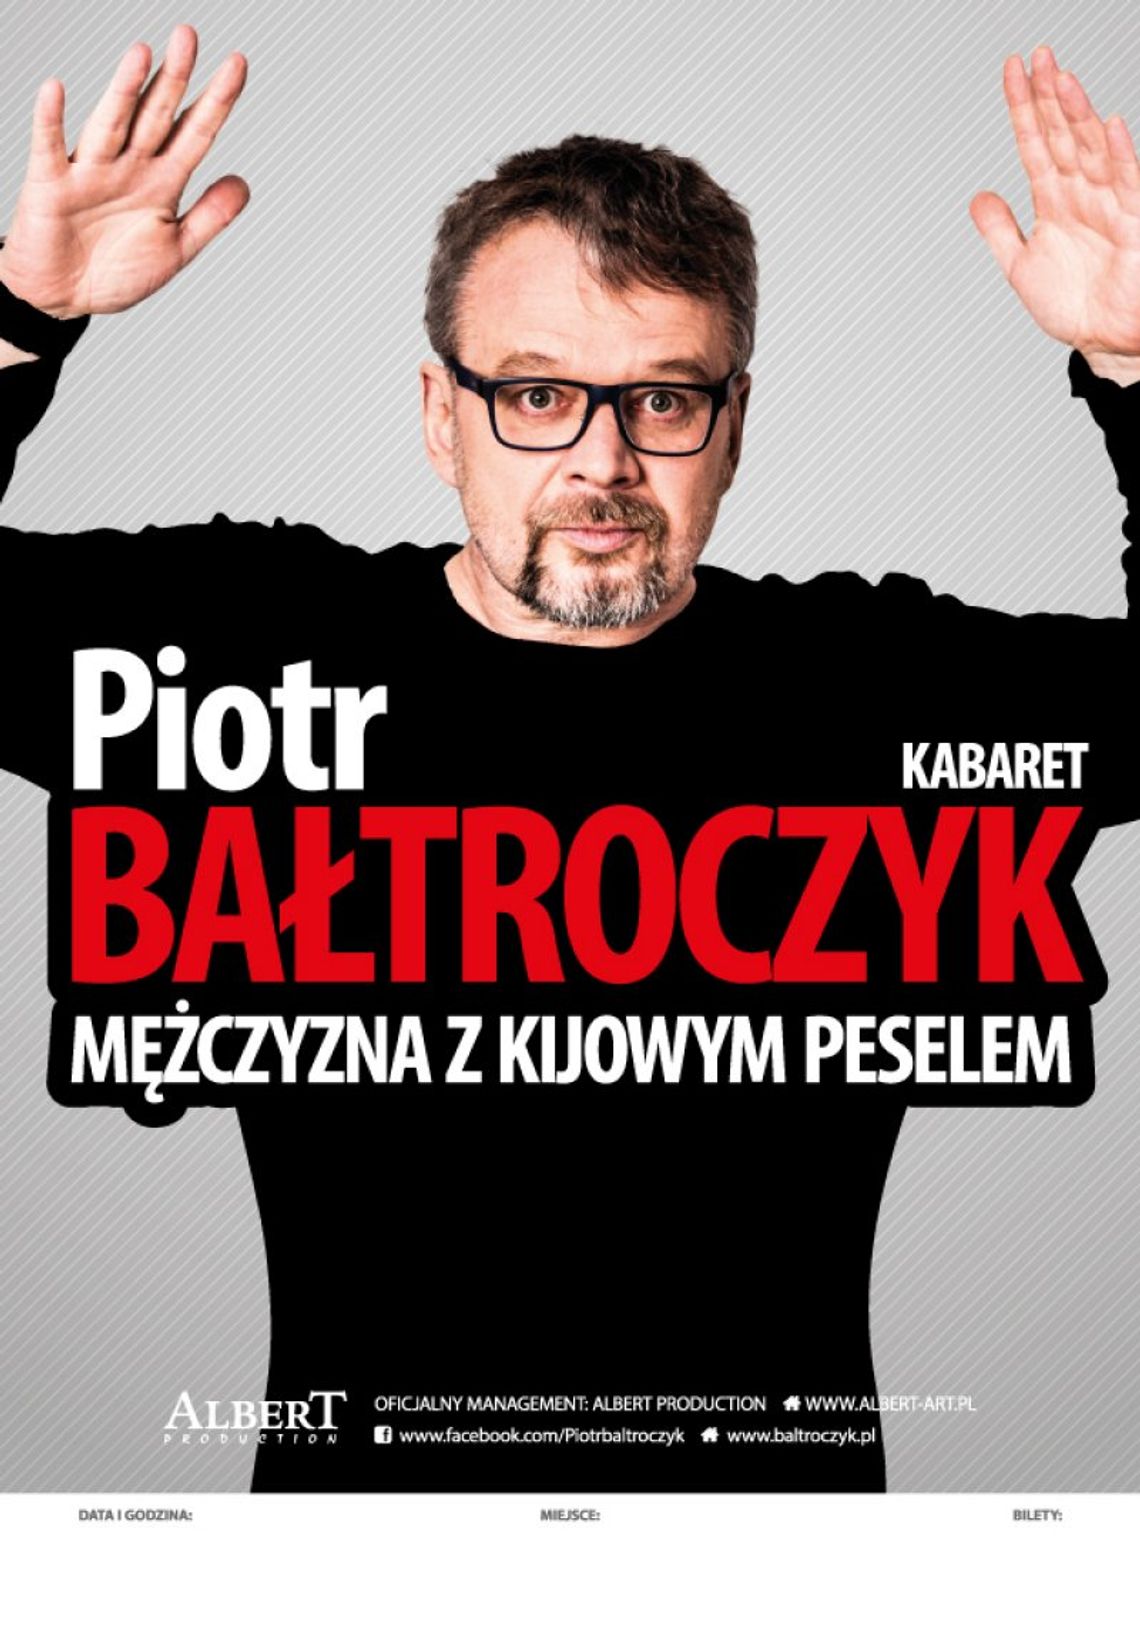 Piotr Bałtroczyk w programie „Mężczyzna z kijowym peselem”.